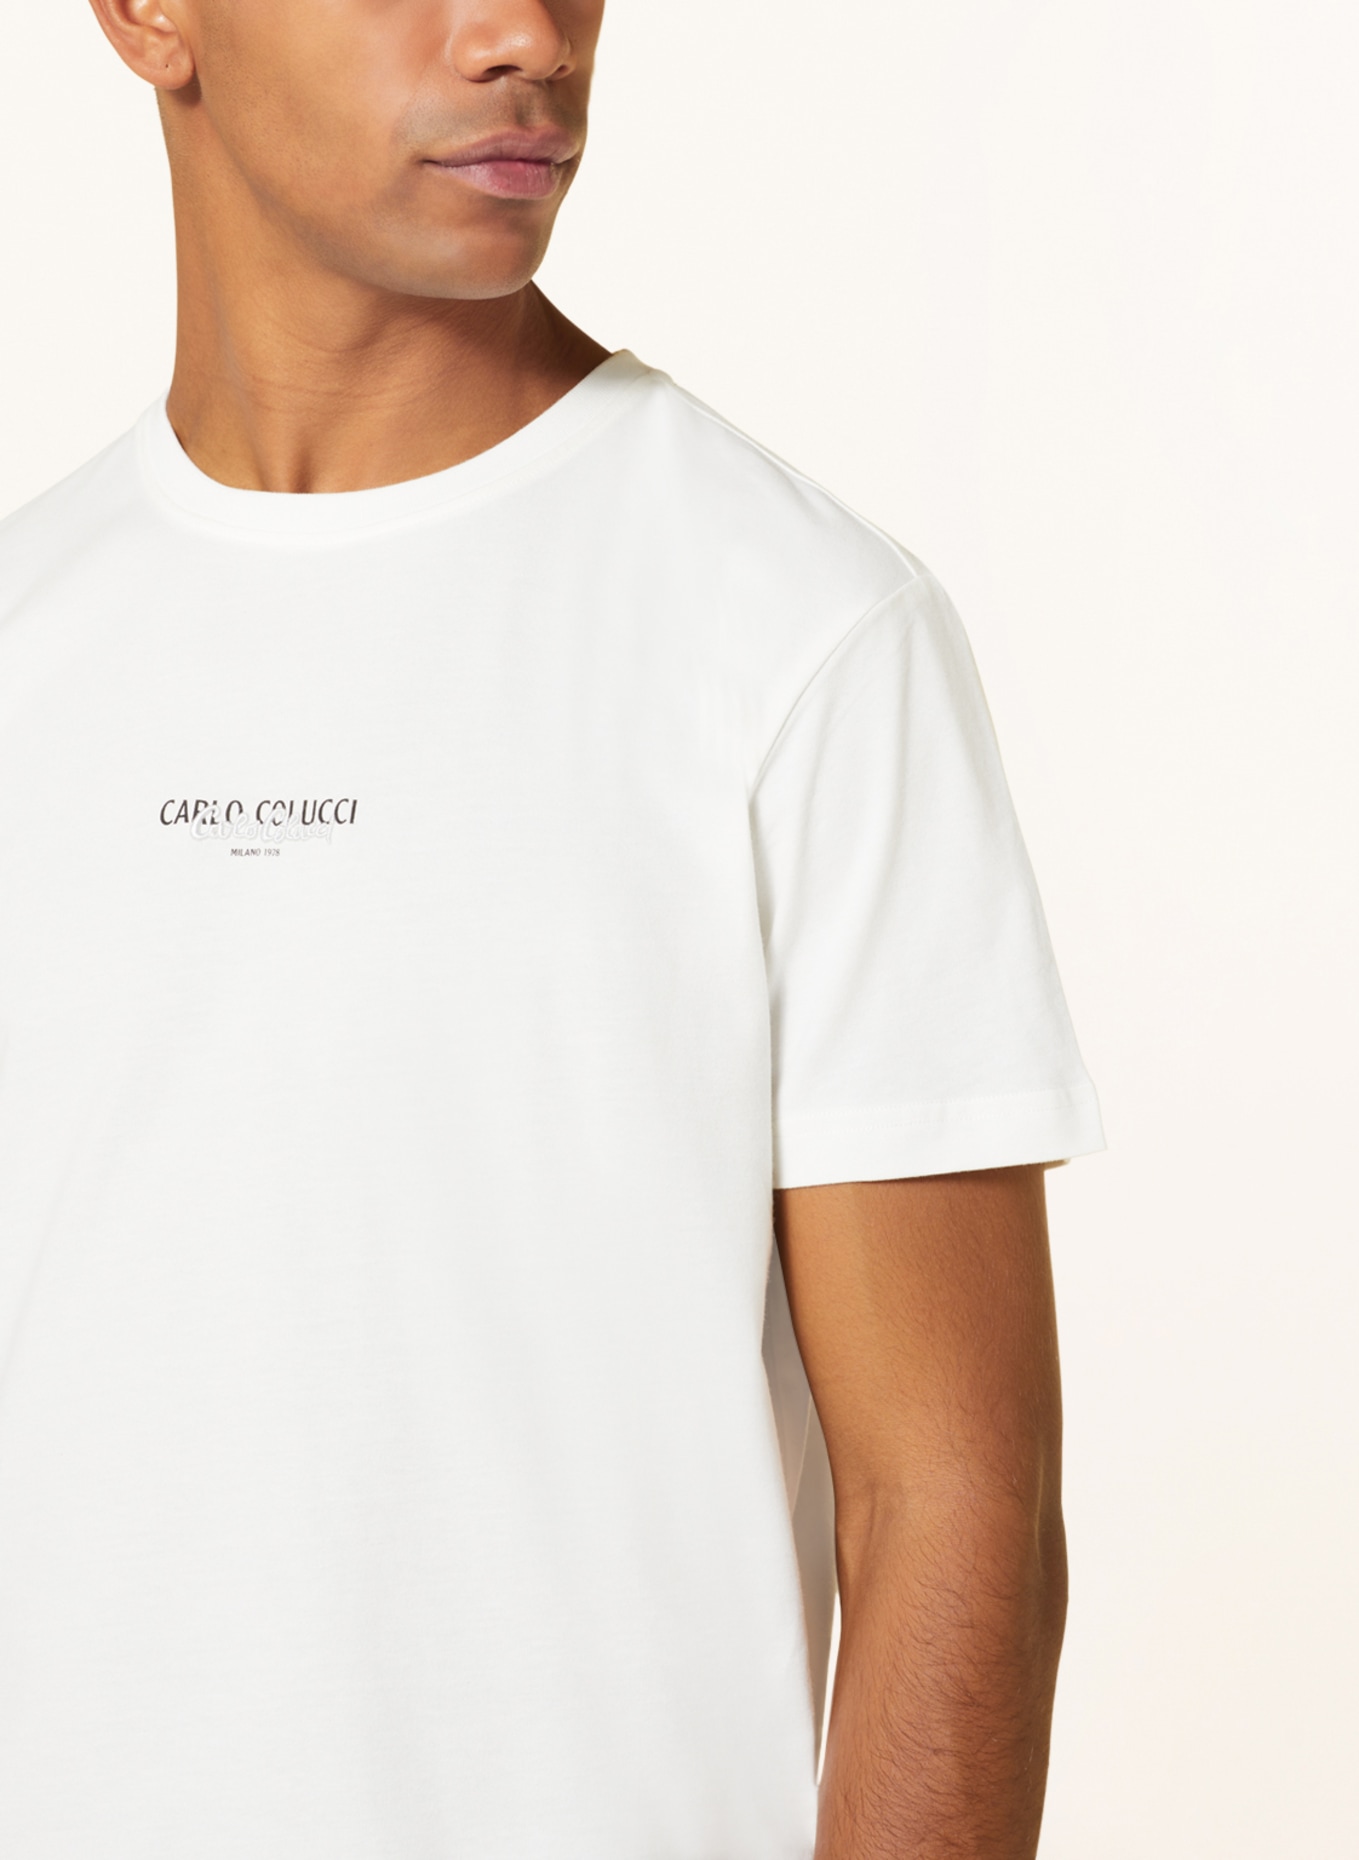 CARLO COLUCCI T-shirt, Color: CREAM (Image 4)